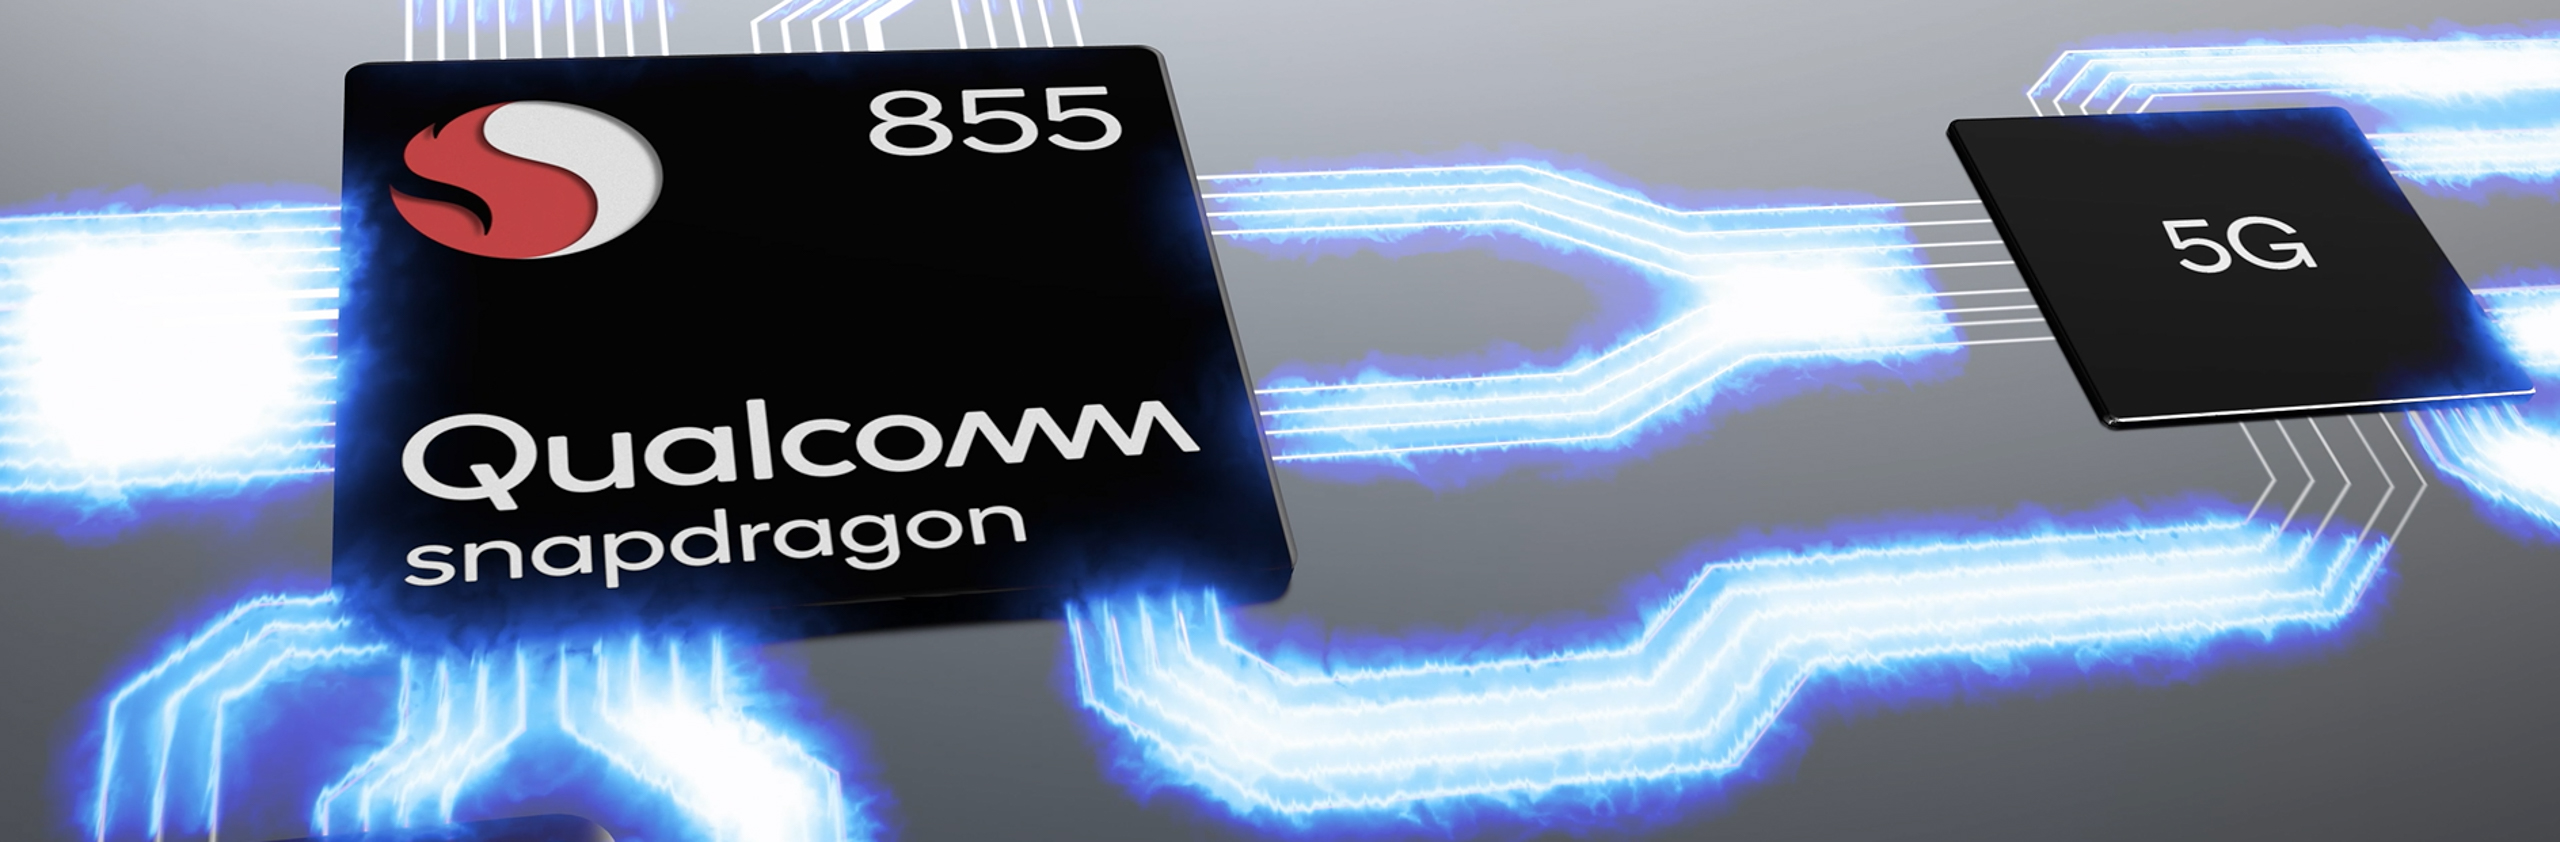 Qualcomm củng cố vị thế dẫn đầu trong 5G từ Mobile cho đến PC